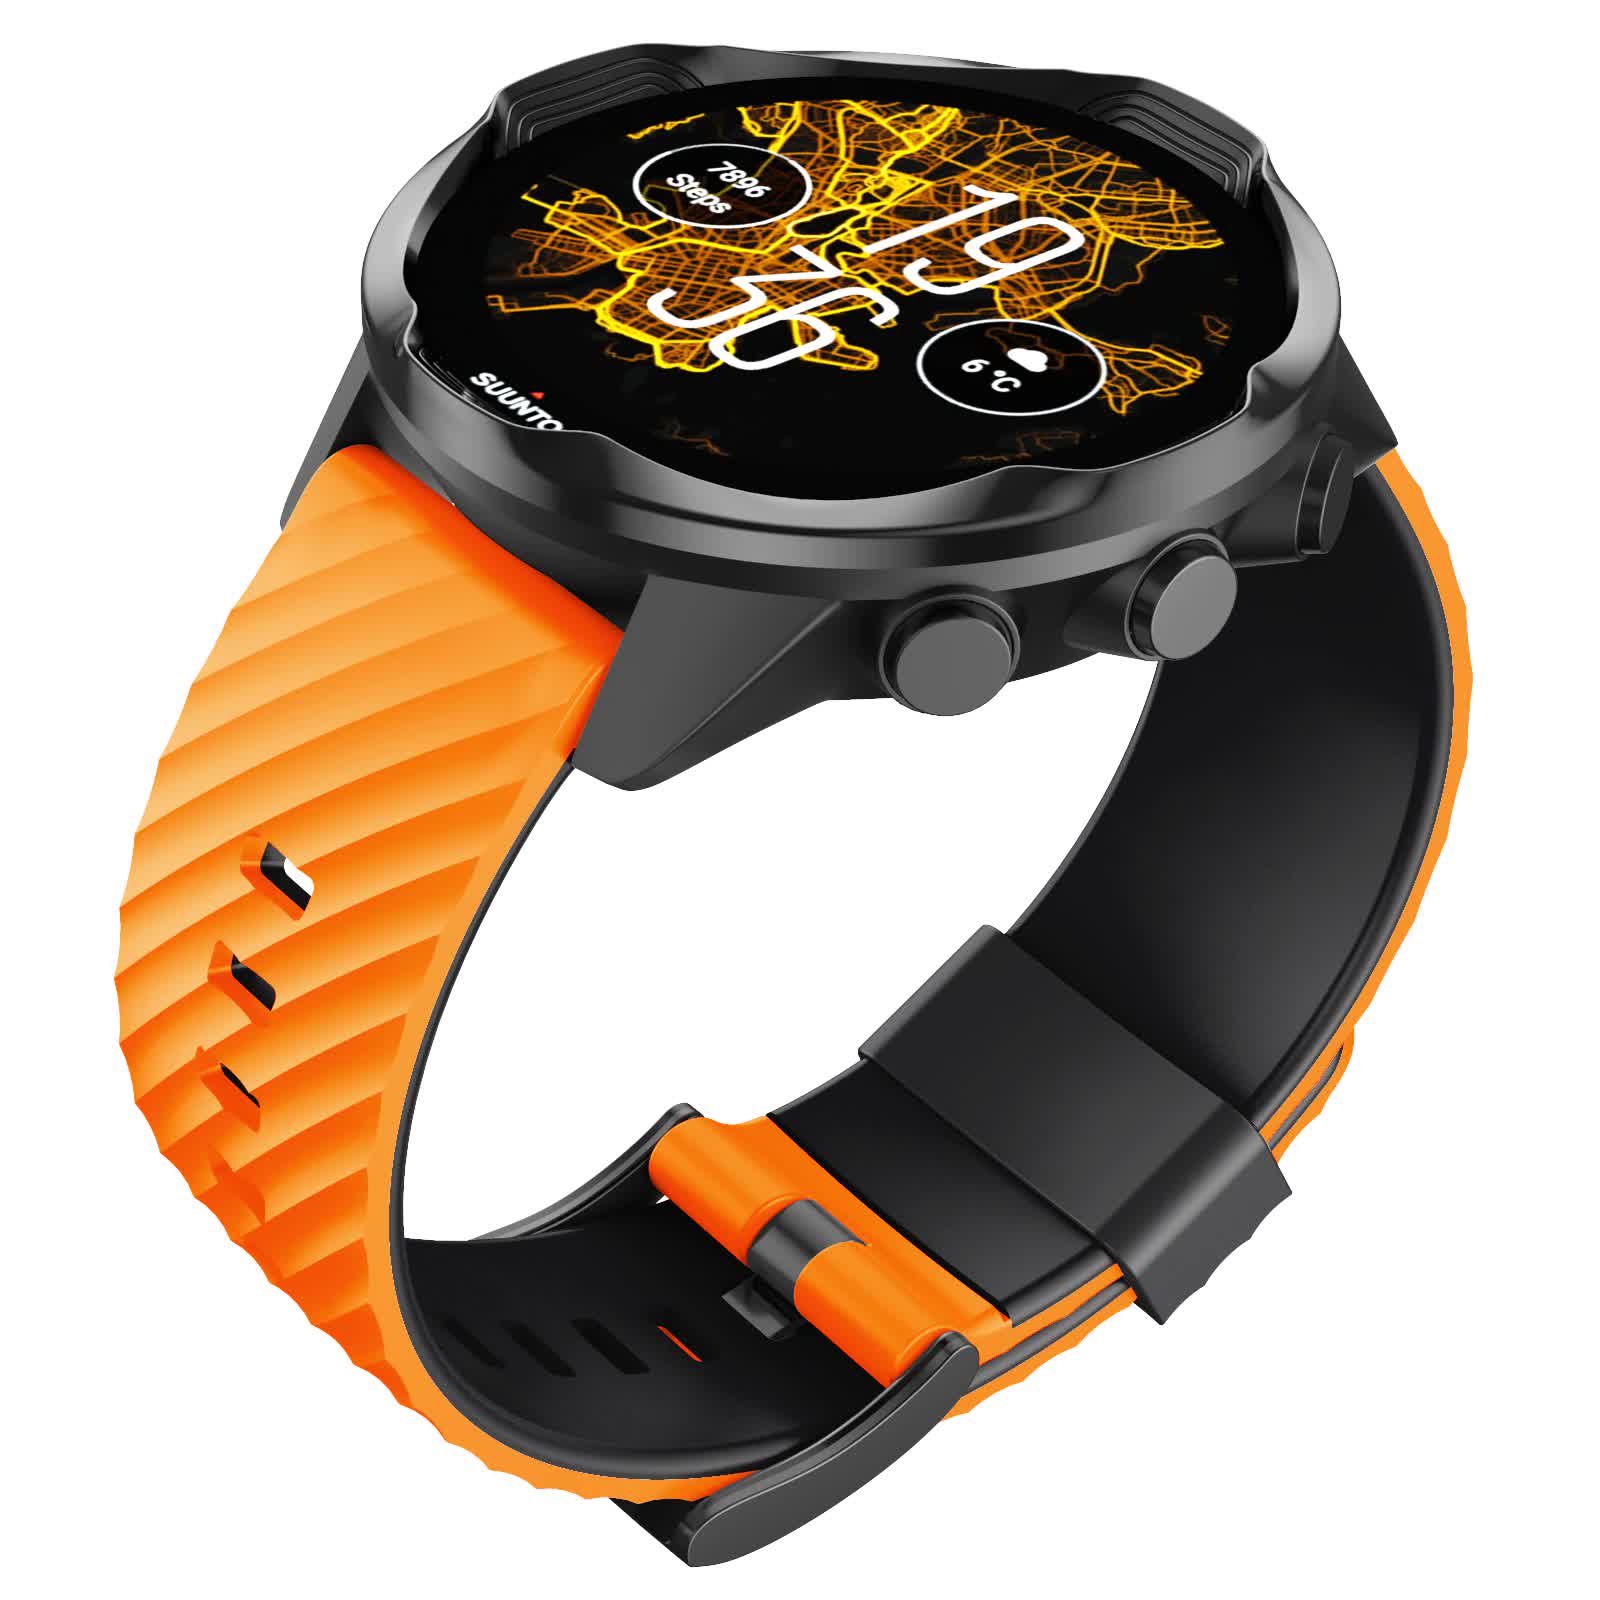 Ремешок для часов Suunto силиконовый SS050545000-noname-orange (неоригинальный) Ремешки и браслеты для часов